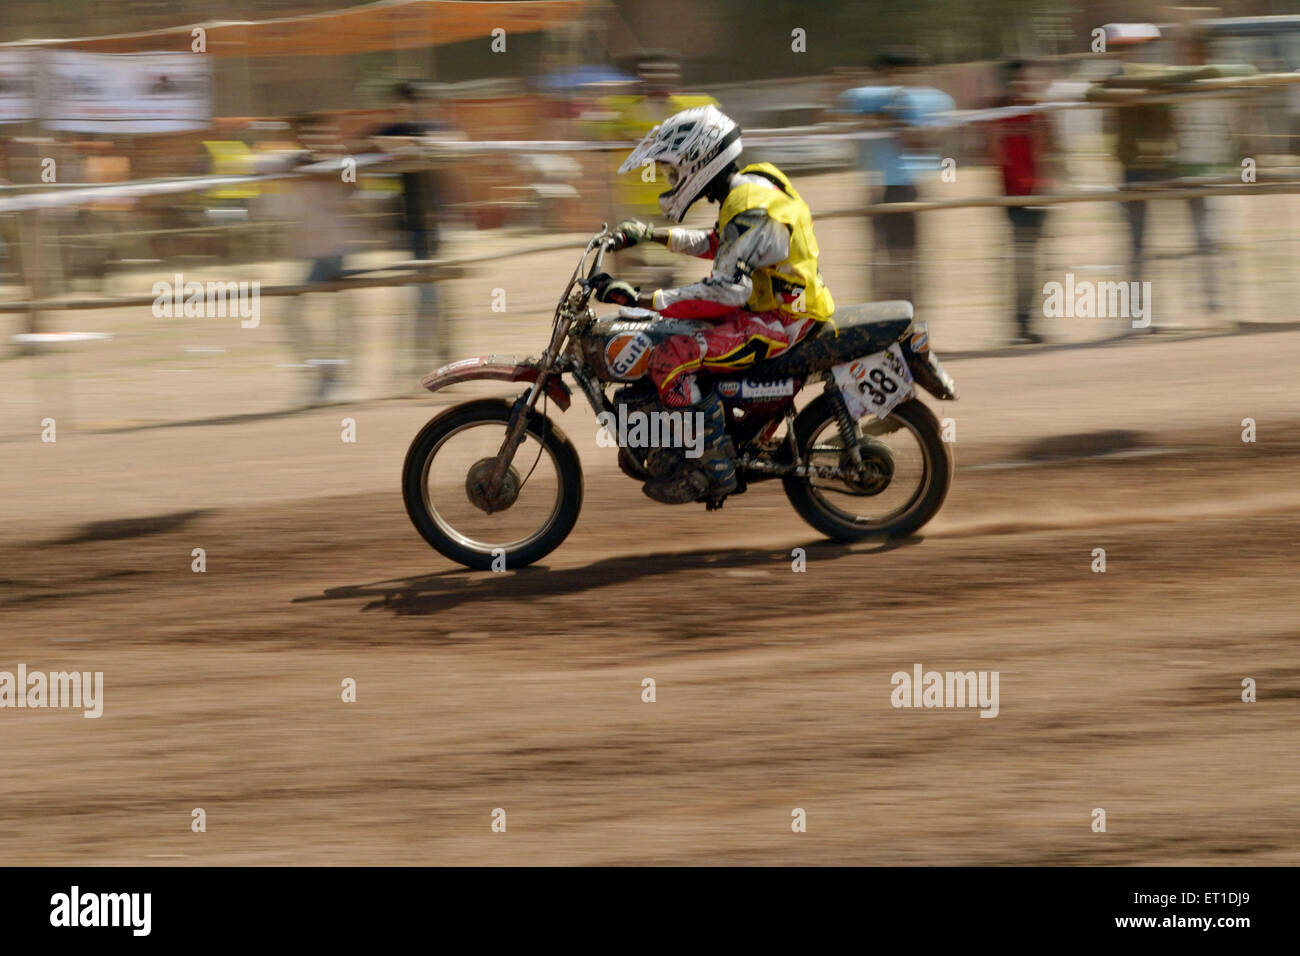 Bike-Rennen Dirt Motorrad-Rennen Jodhpur Rajasthan Indien Asien Stockfoto